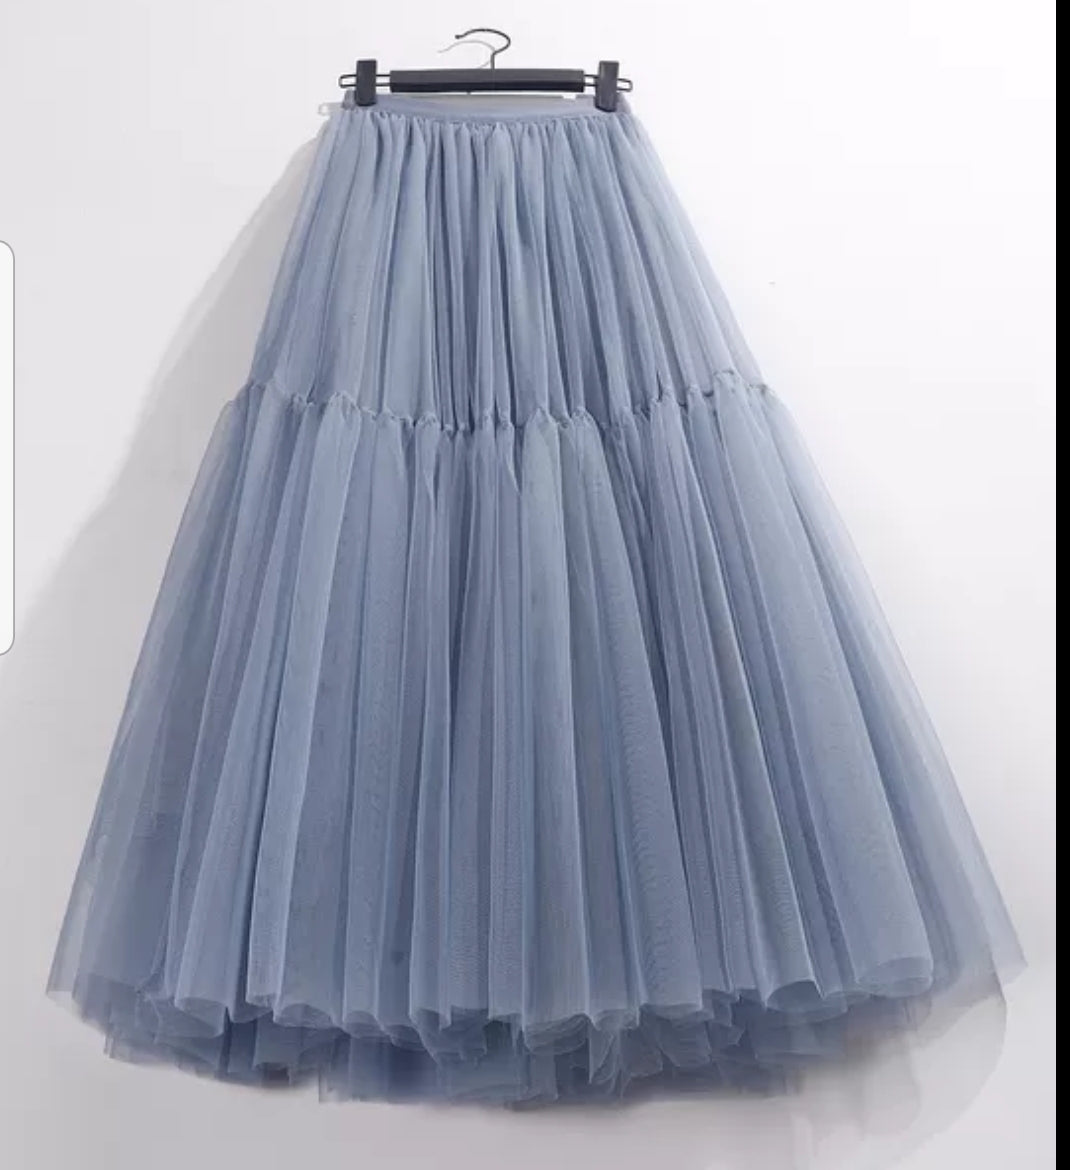 Vintage Tulle Skirt